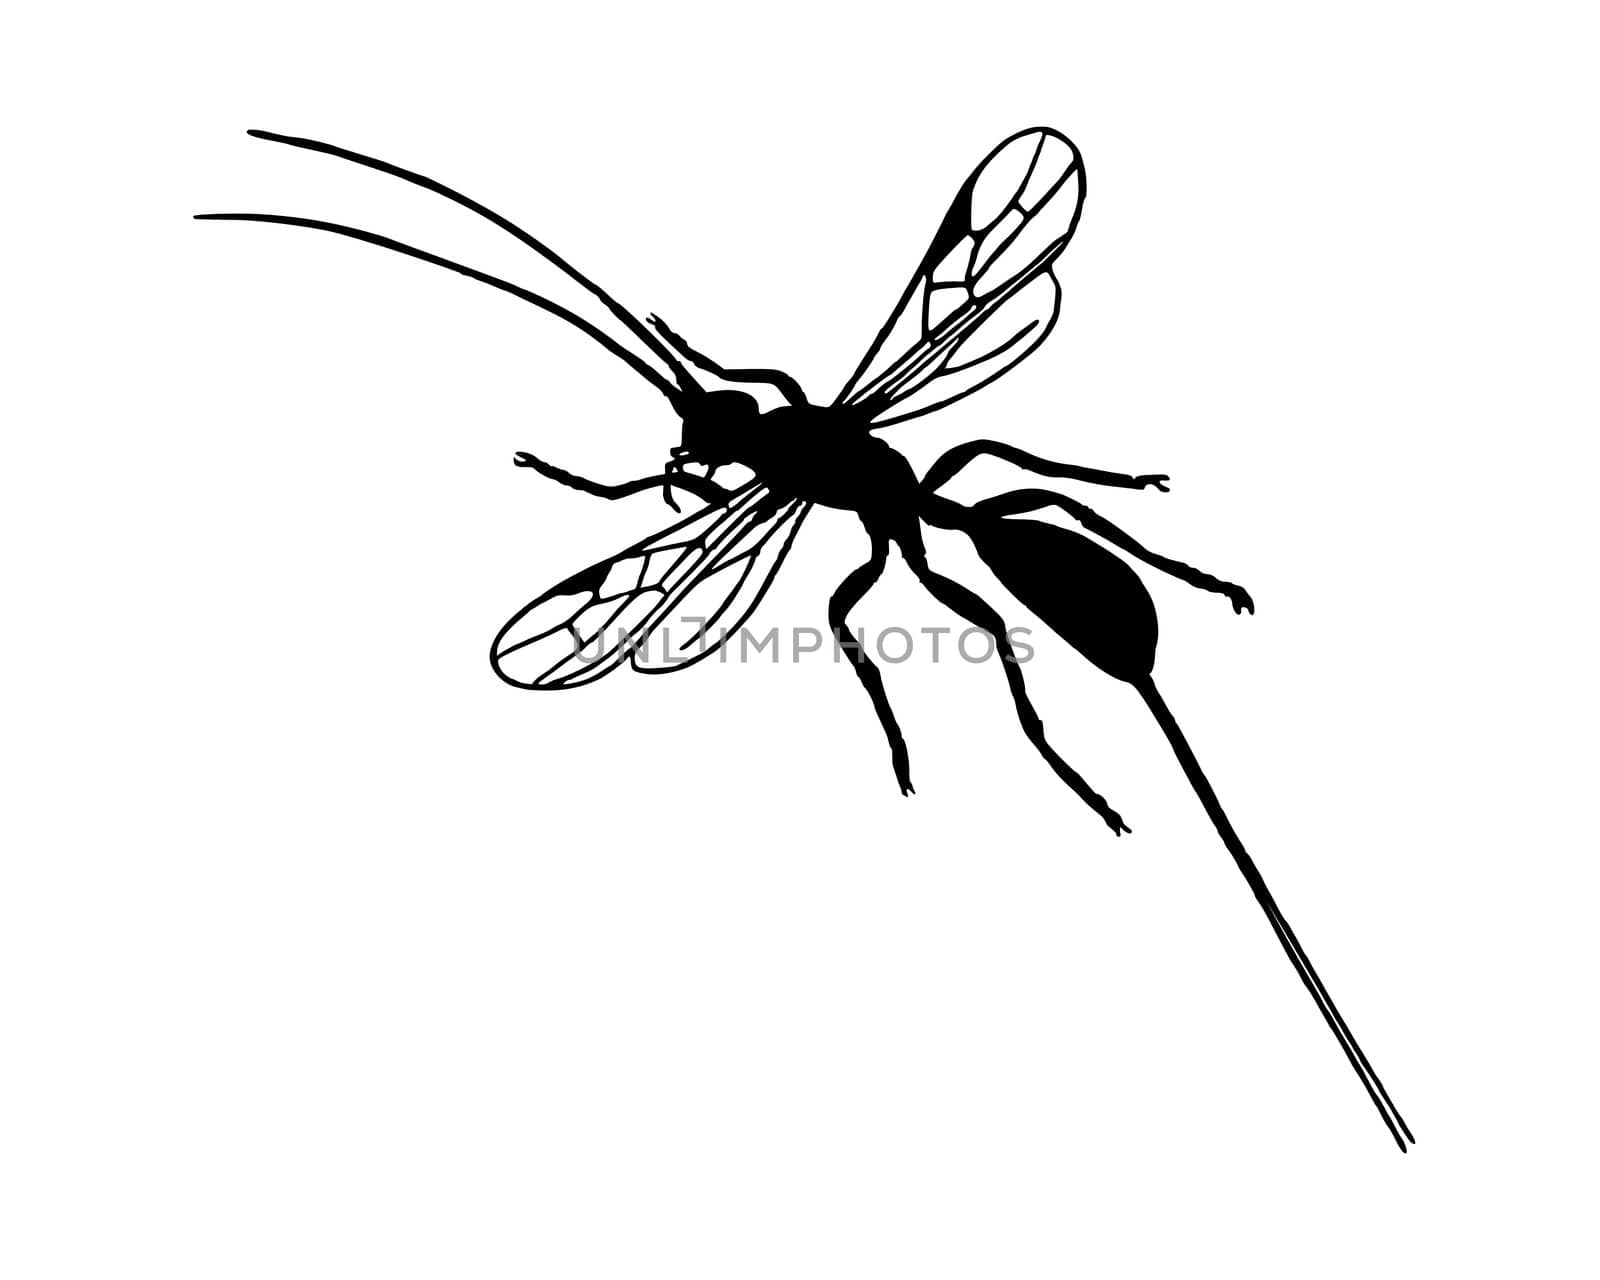 Braconid wasp by rbiedermann